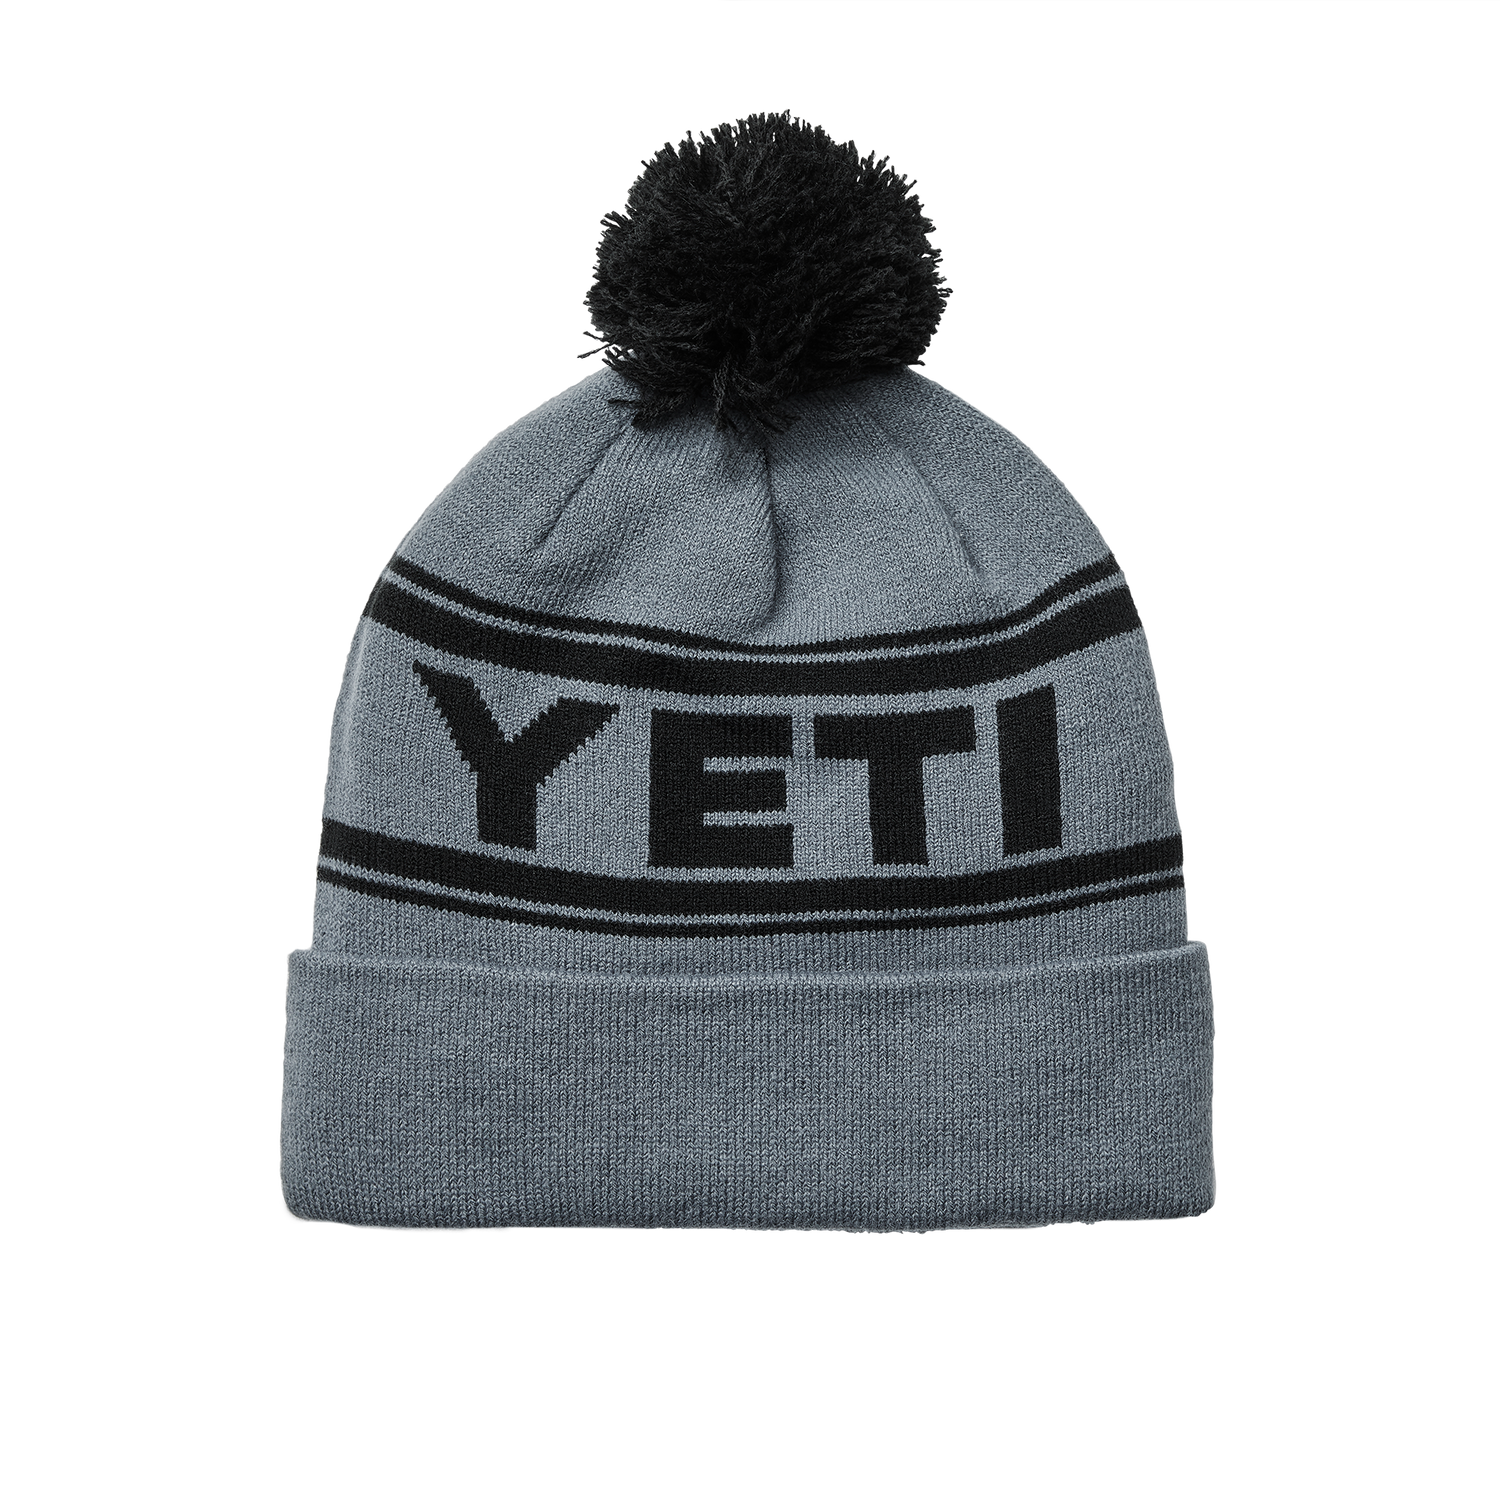 YETI Men's Clothing: Shirts, Hats, Hoodies And More – YETI EUROPE